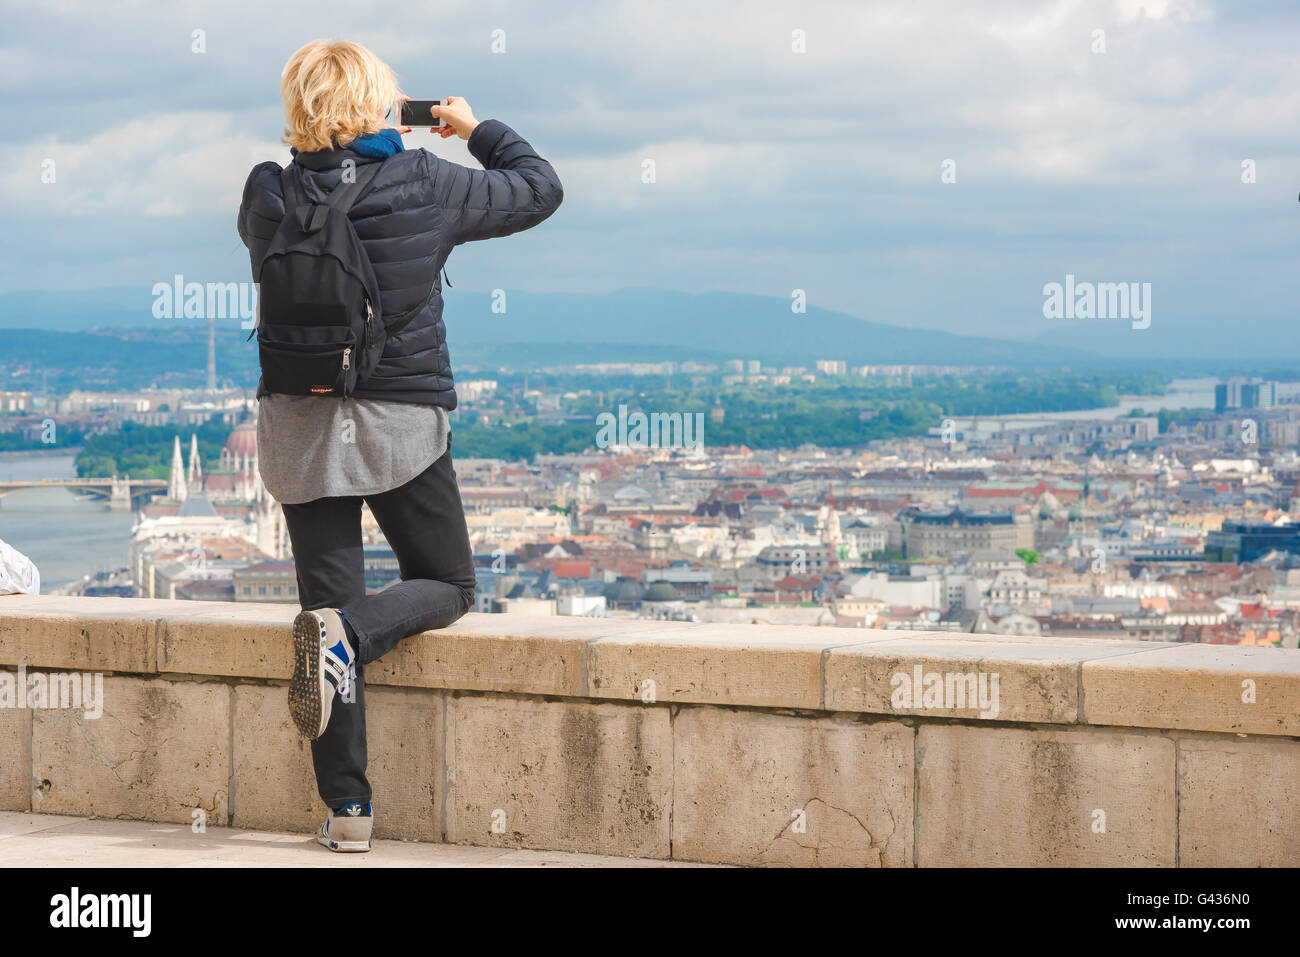 Frau solo Traveler, eine weibliche Touristen Fotos im Zentrum von Budapest von der Oberseite des Gellért-hegy Hügel auf der Budaer Seite der Donau, Ungarn. Stockfoto